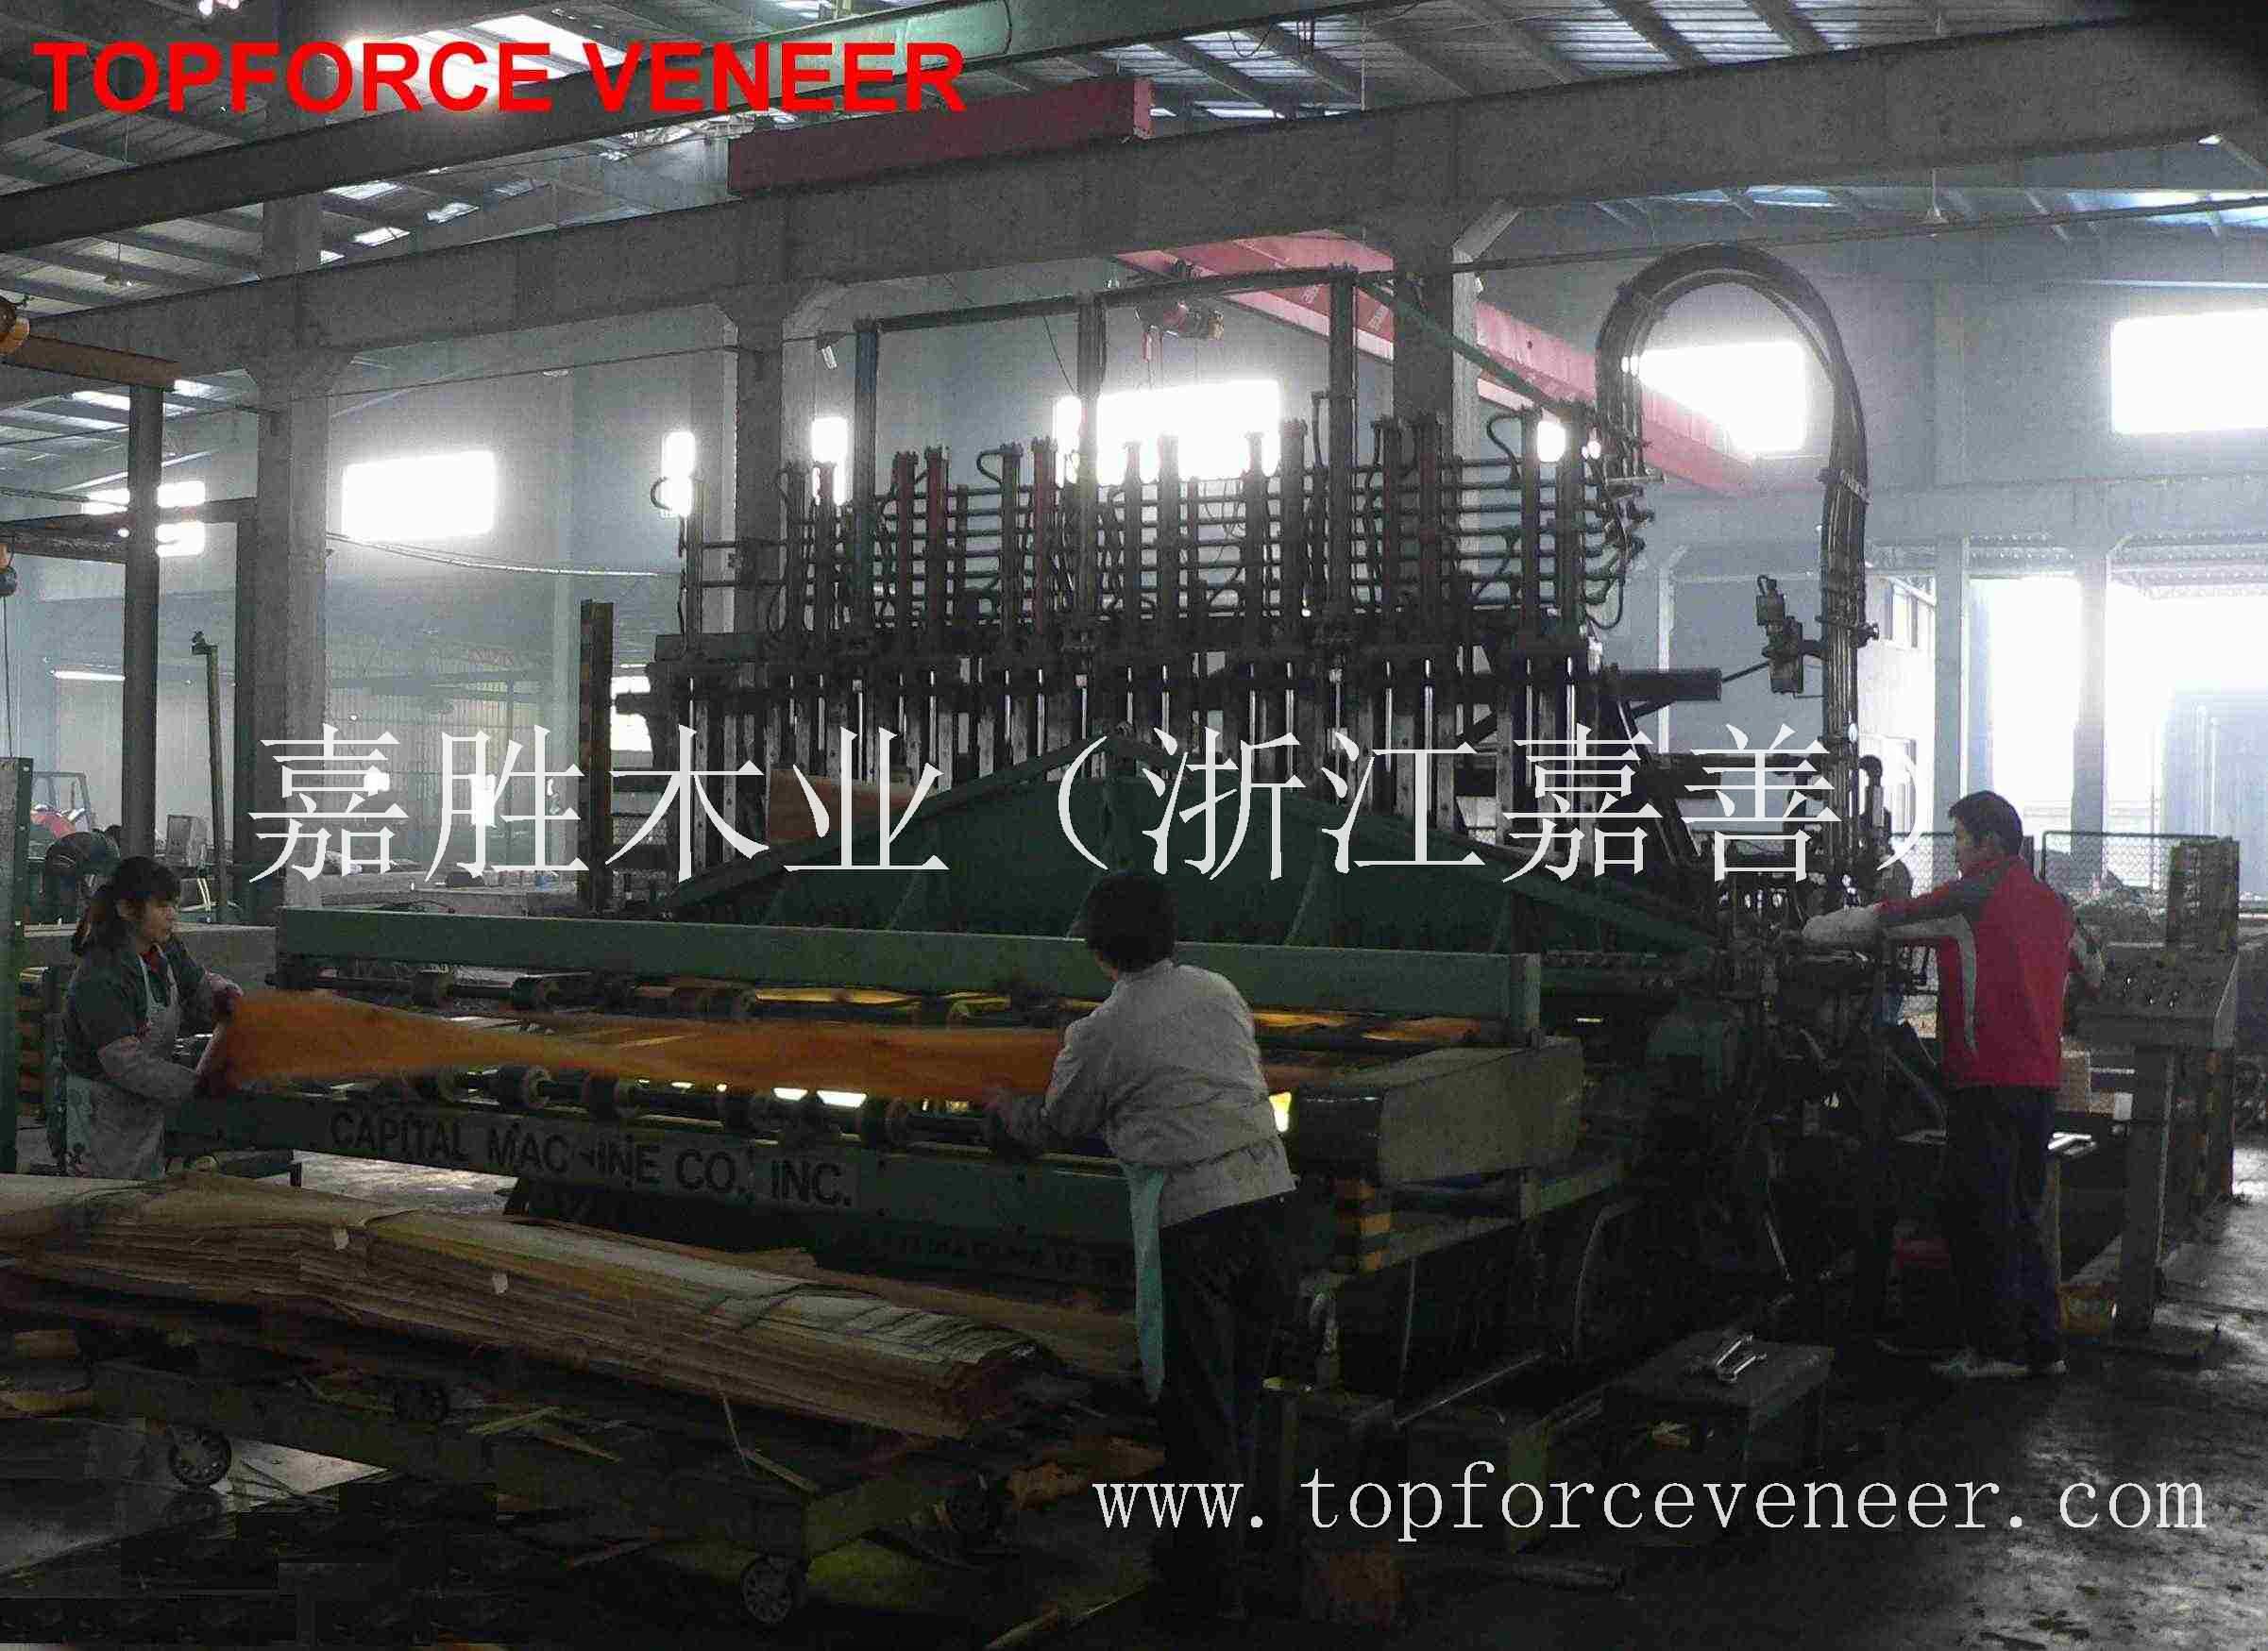 浙江原木木皮加工 ZheJiang Logs Veneer Production Slicing , Rift Cut , Stay Log , Quarter Cut